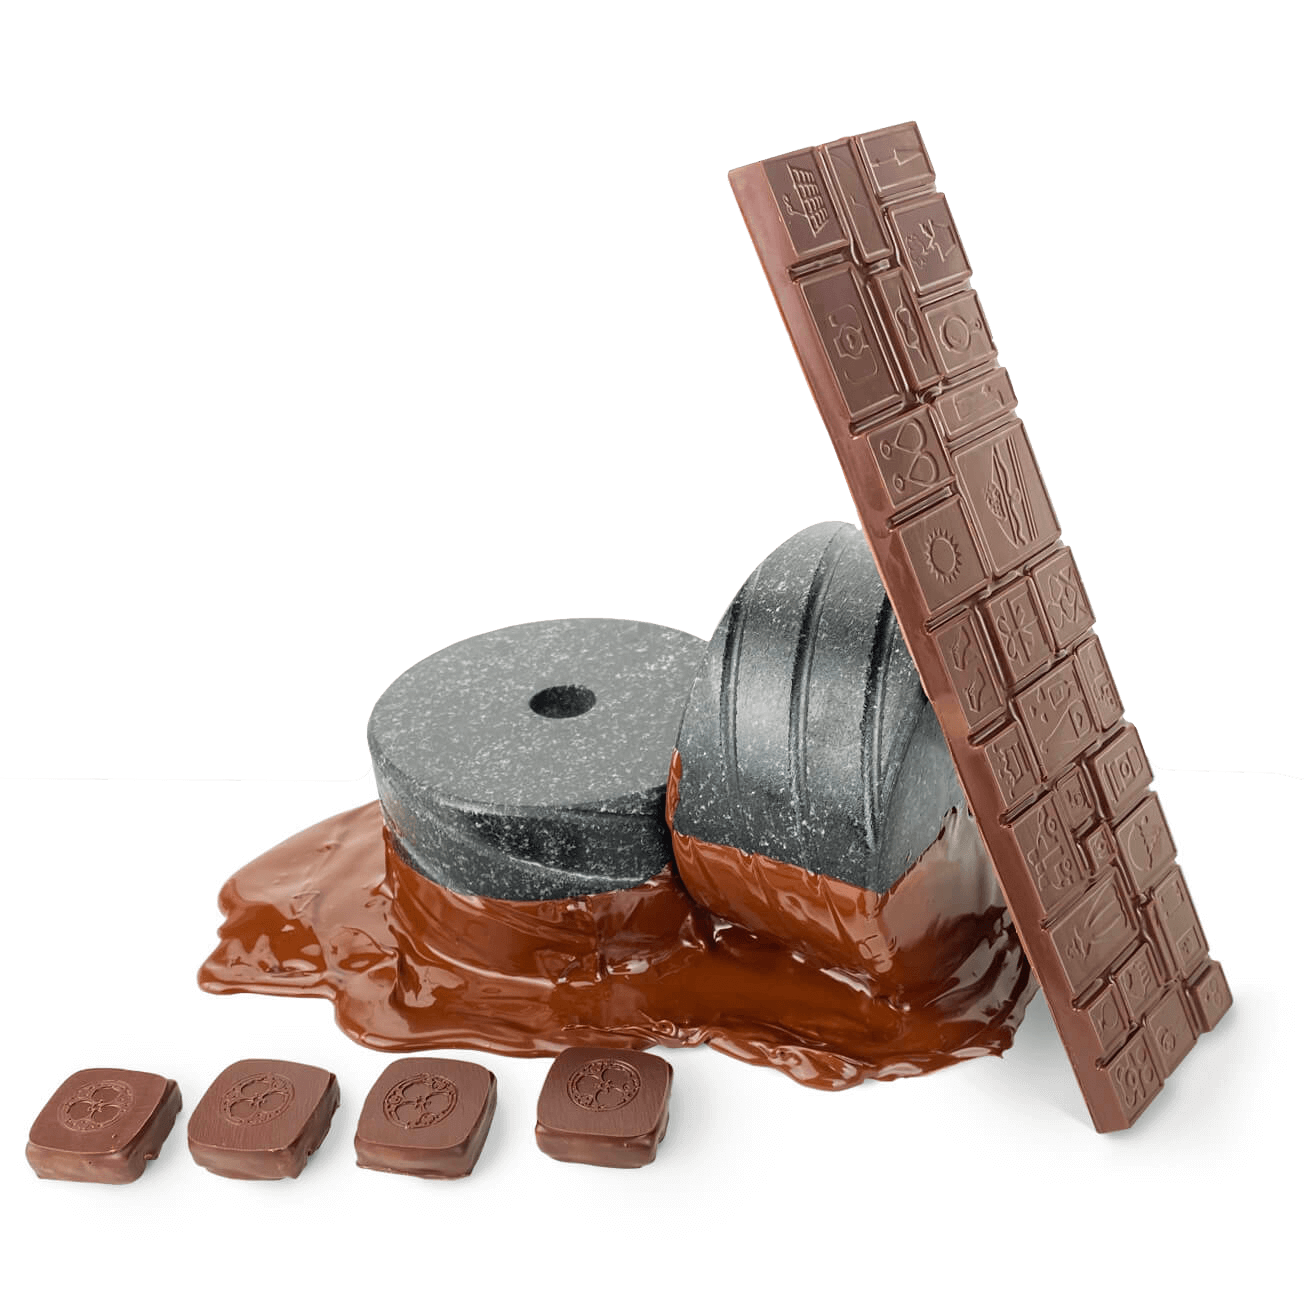 Заказать рецепт ремесленного шоколада у профессиональных шоколатье | CHOCOLOGY